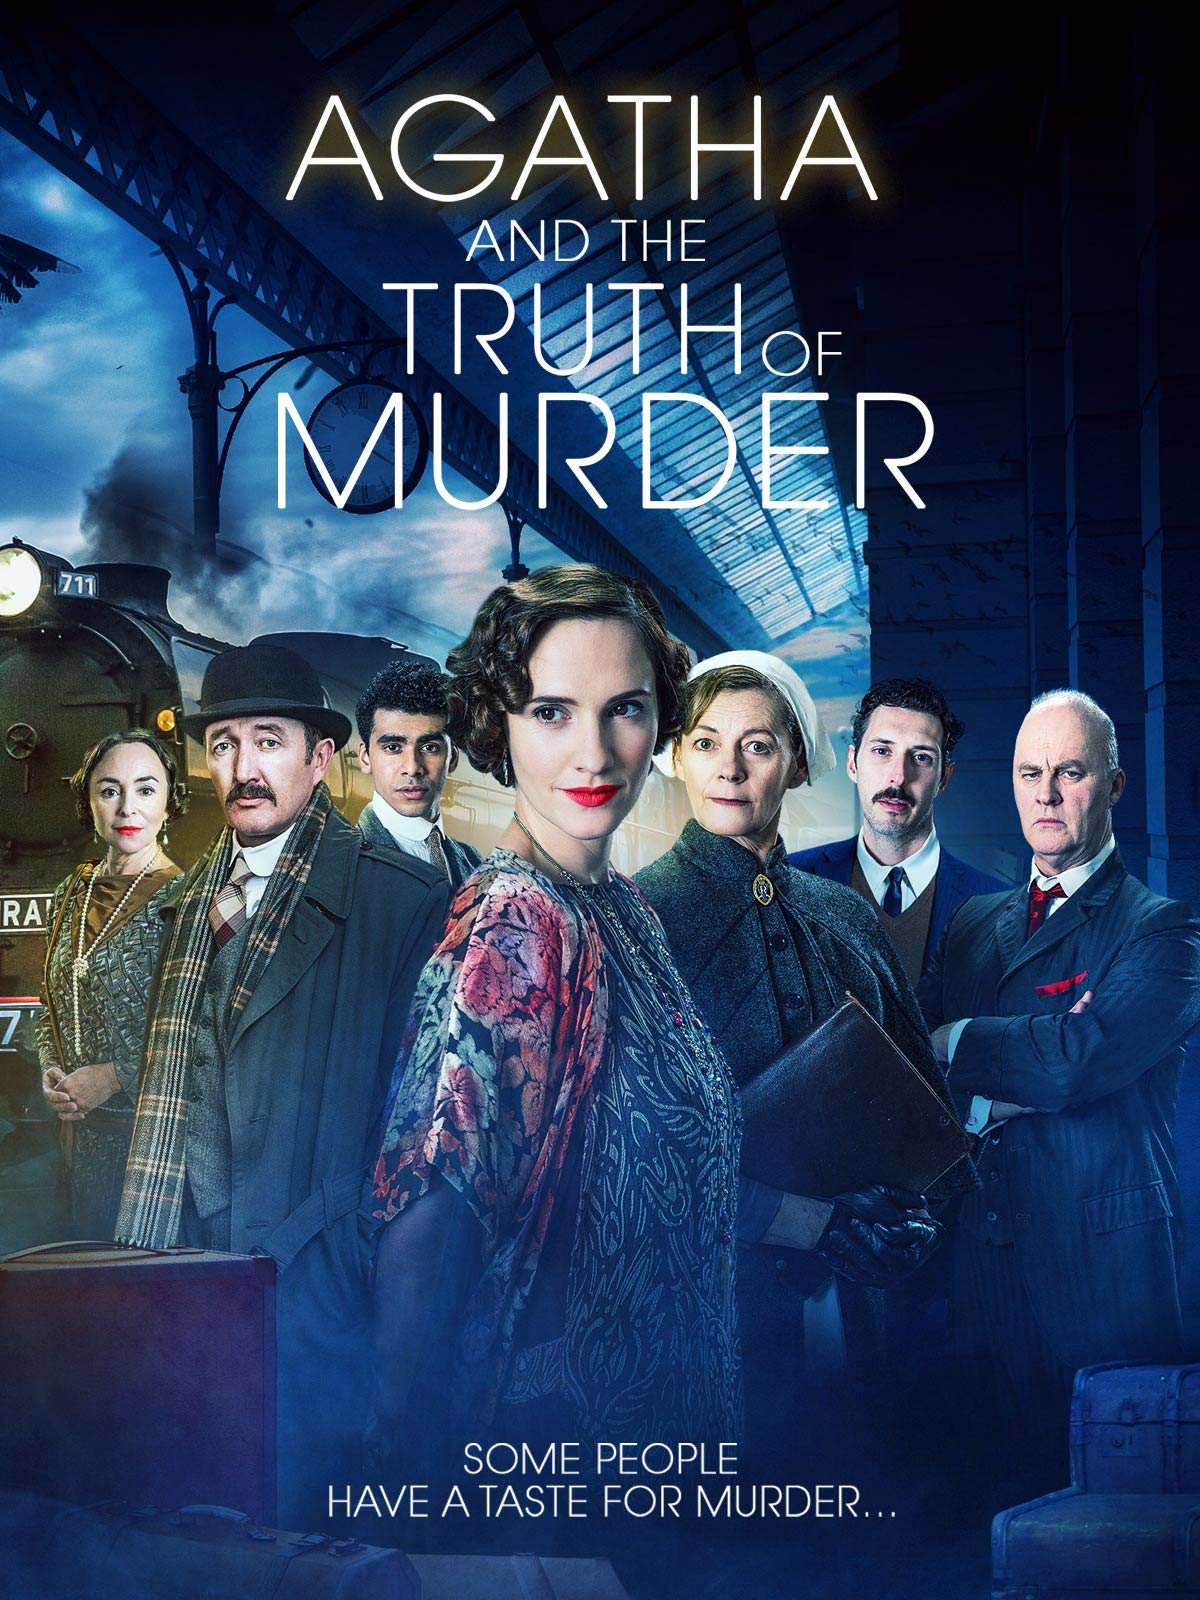 Caratula de Agatha Christie and the Truth of Murder (Agatha Christie y la verdad del crimen) 